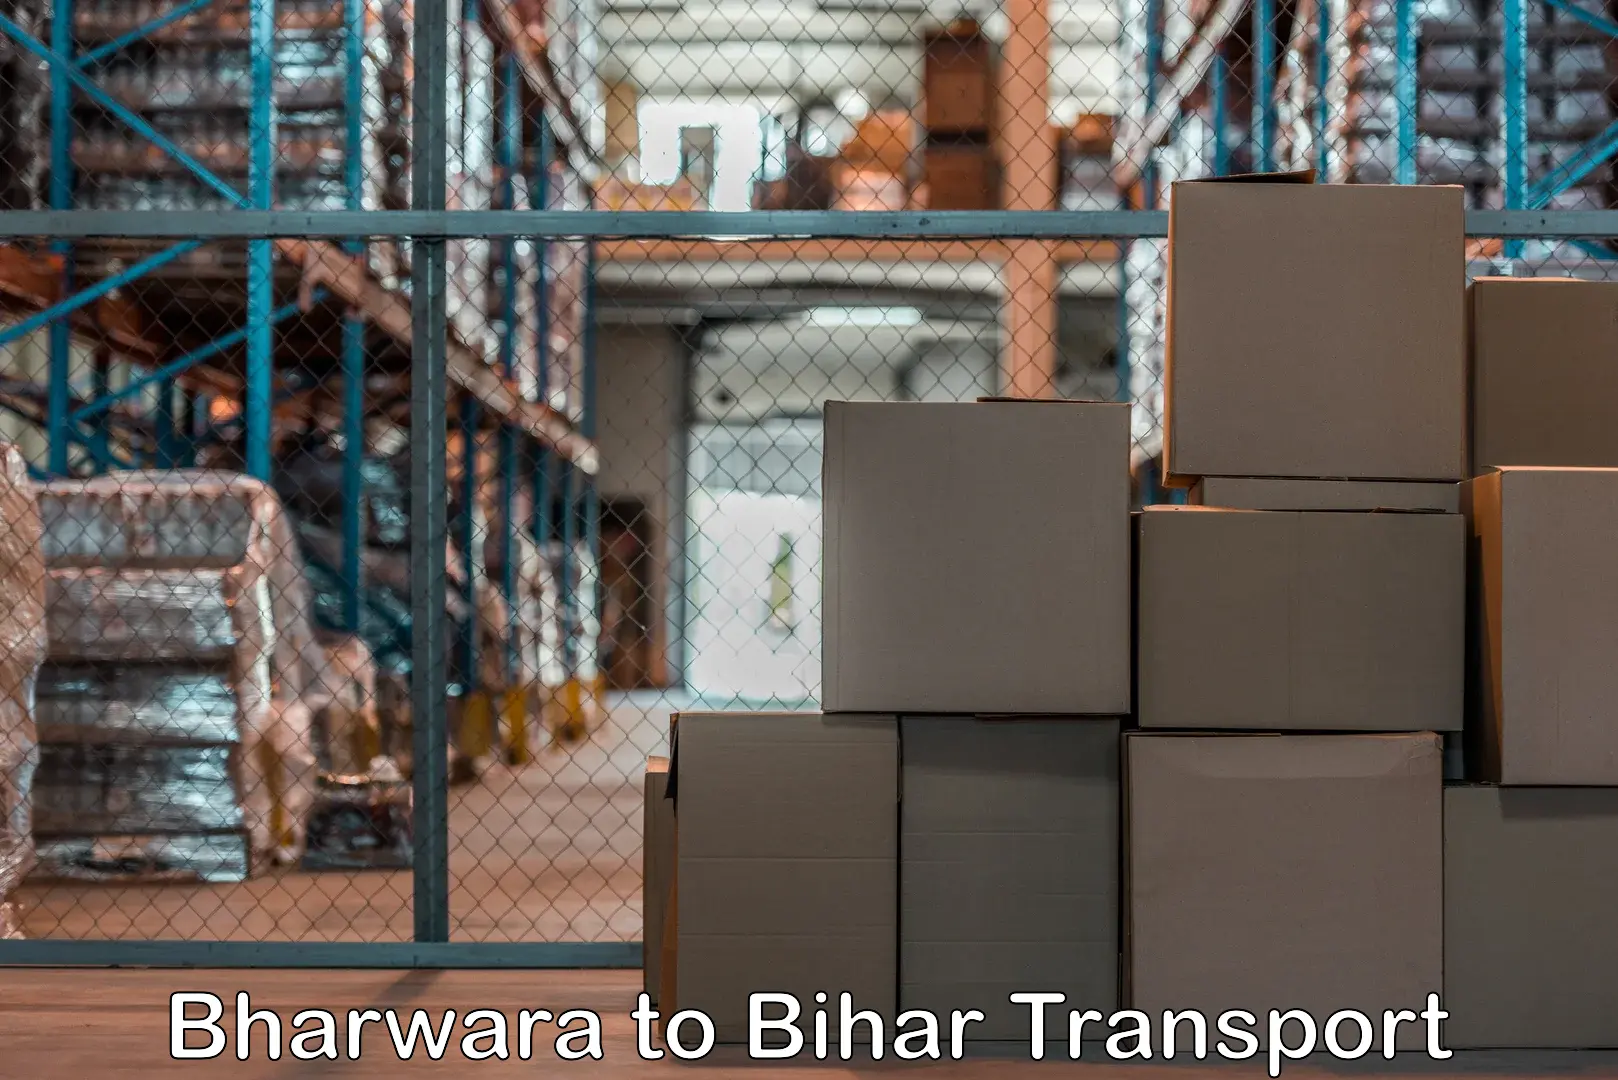 Daily transport service Bharwara to Saraiya